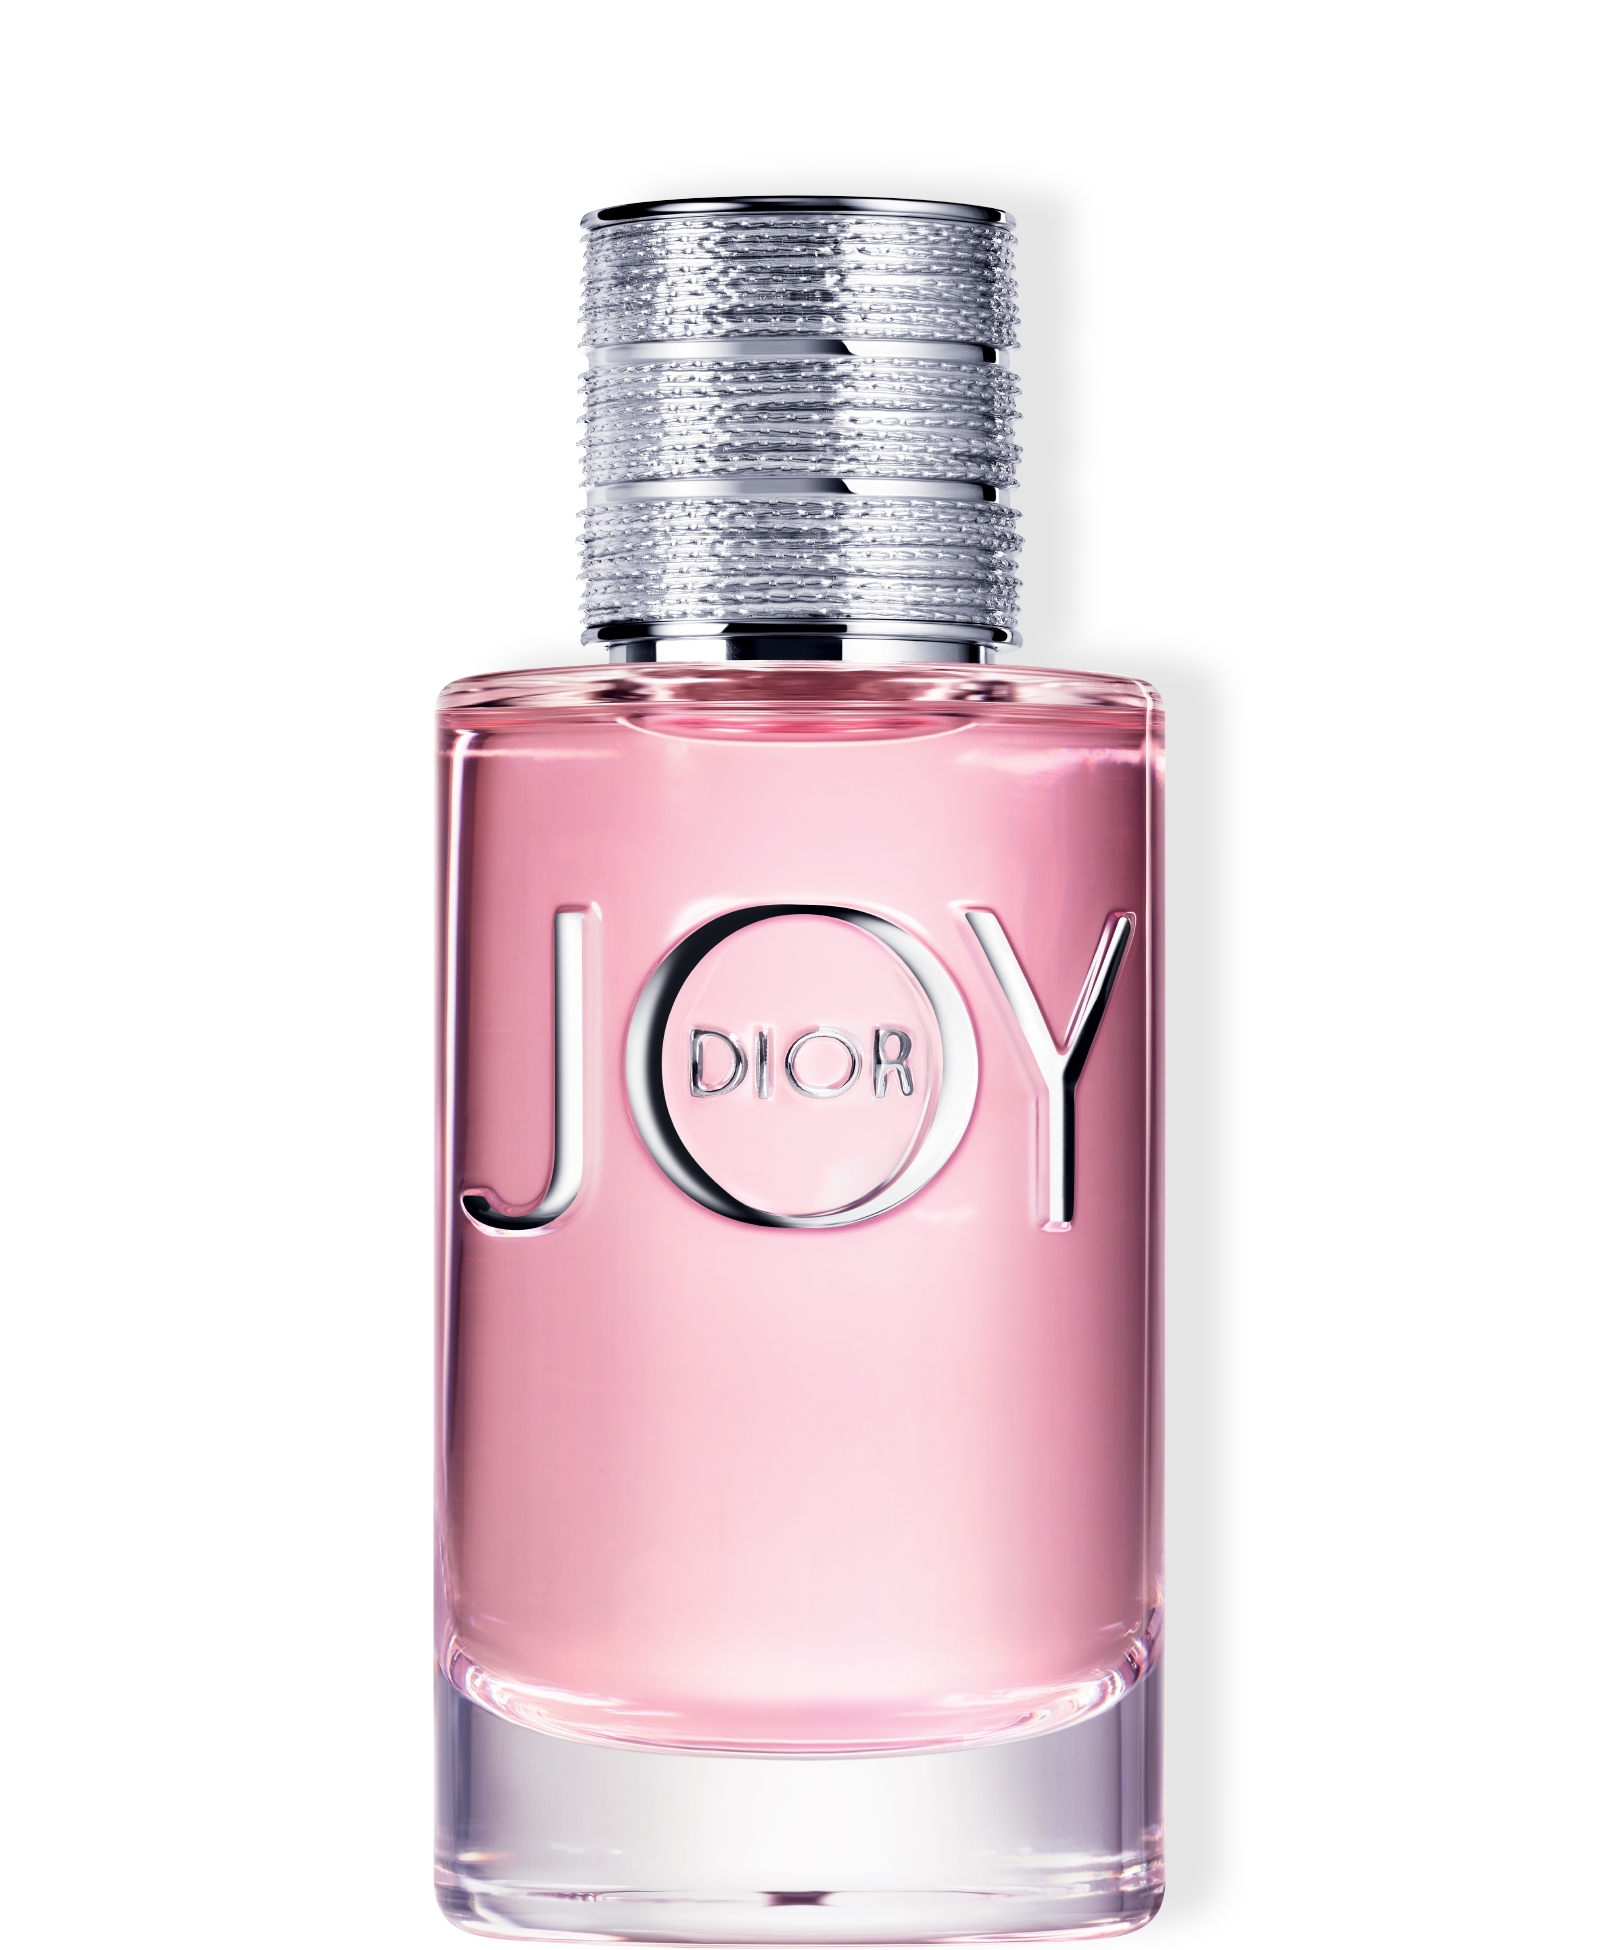  JOY by Dior Eau de Parfum